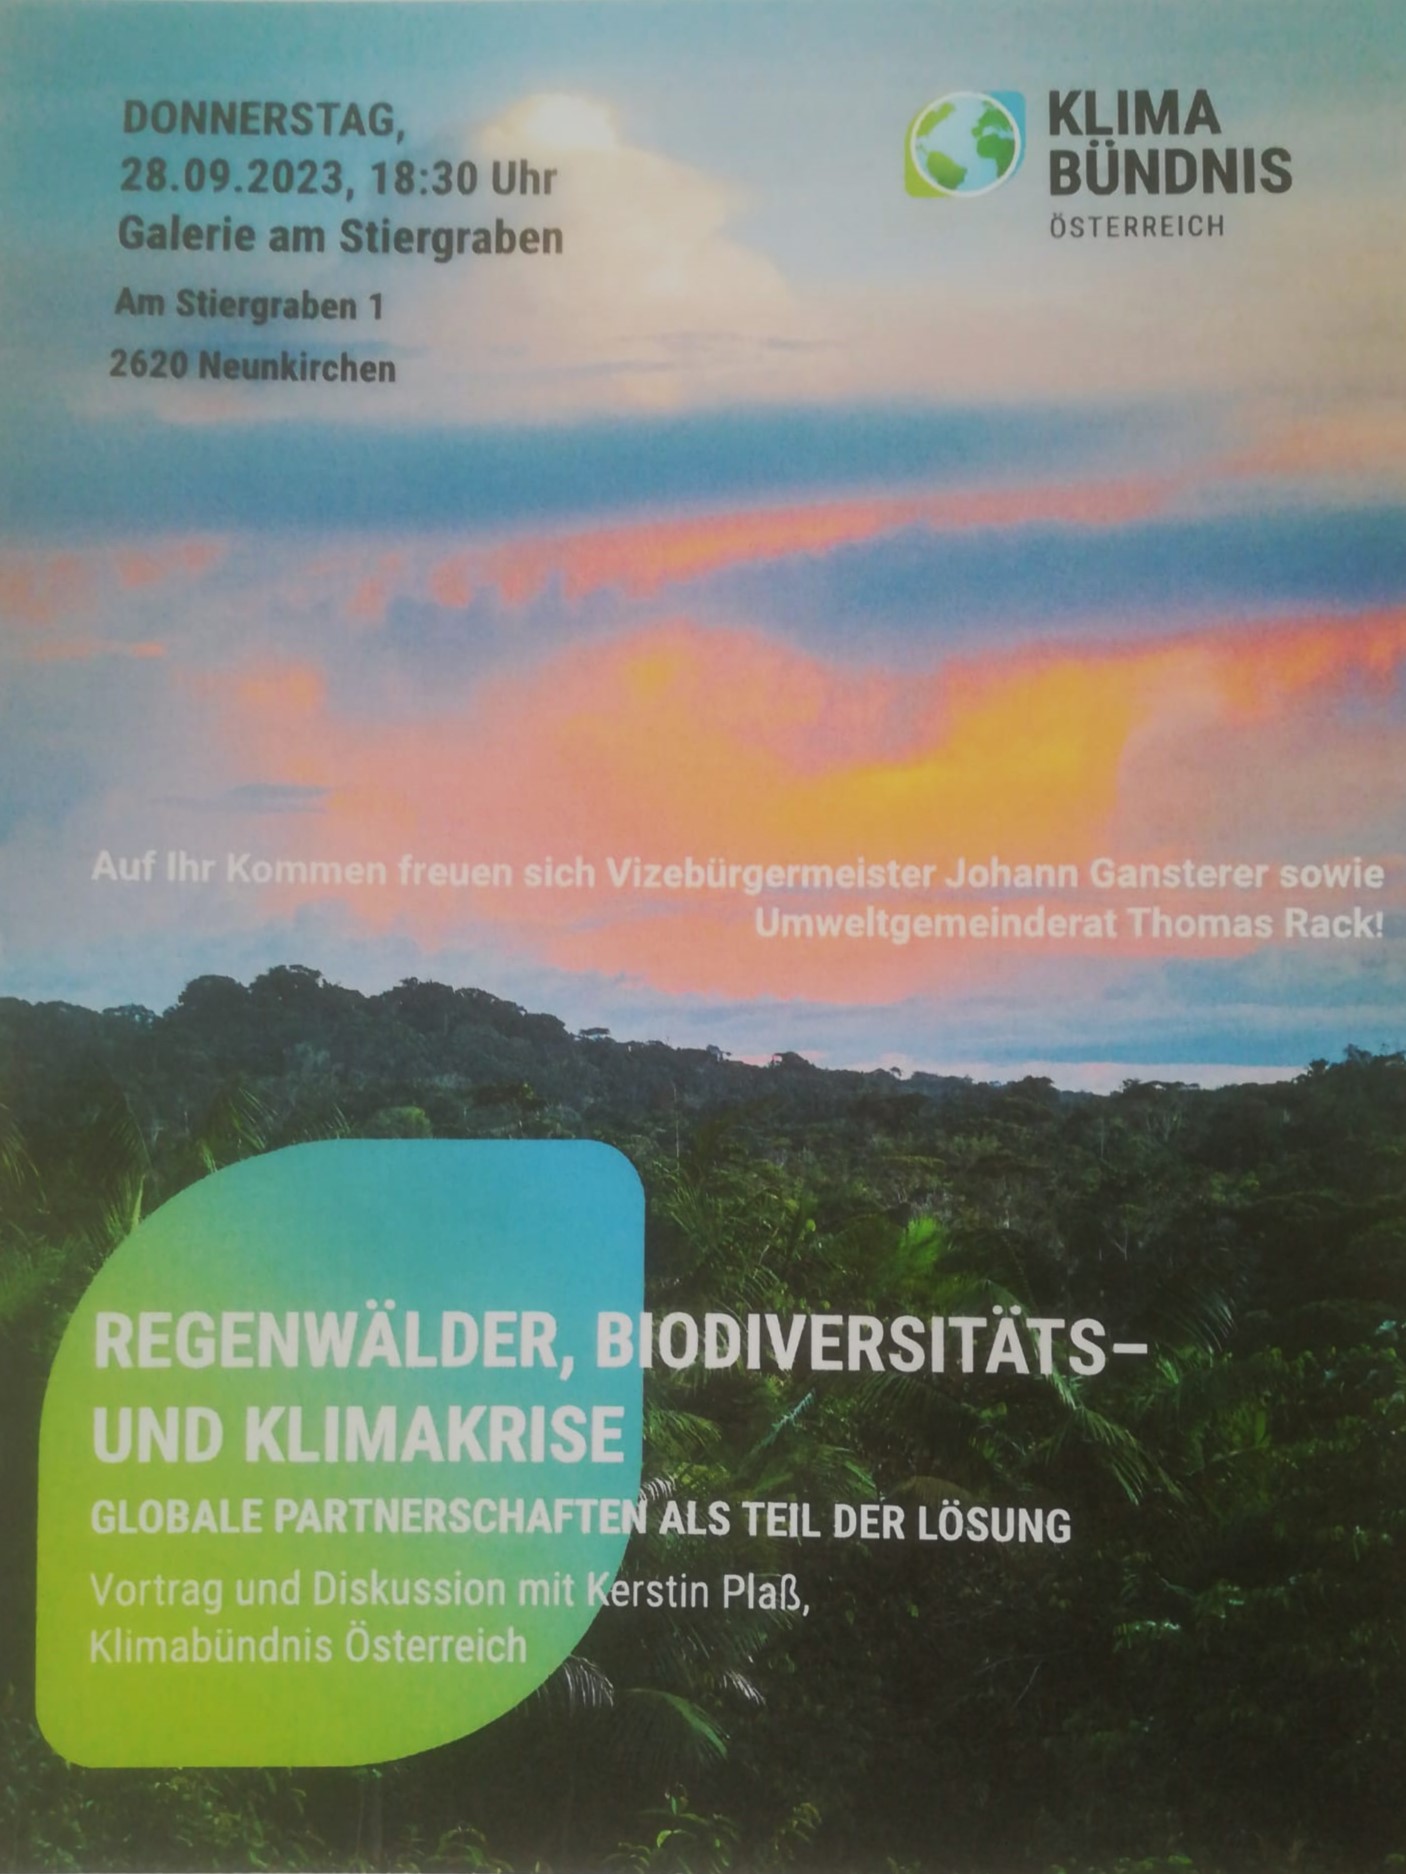 Galerie am Stiergraben: Regenwälder, Klimakrise und globale Partnerschaften